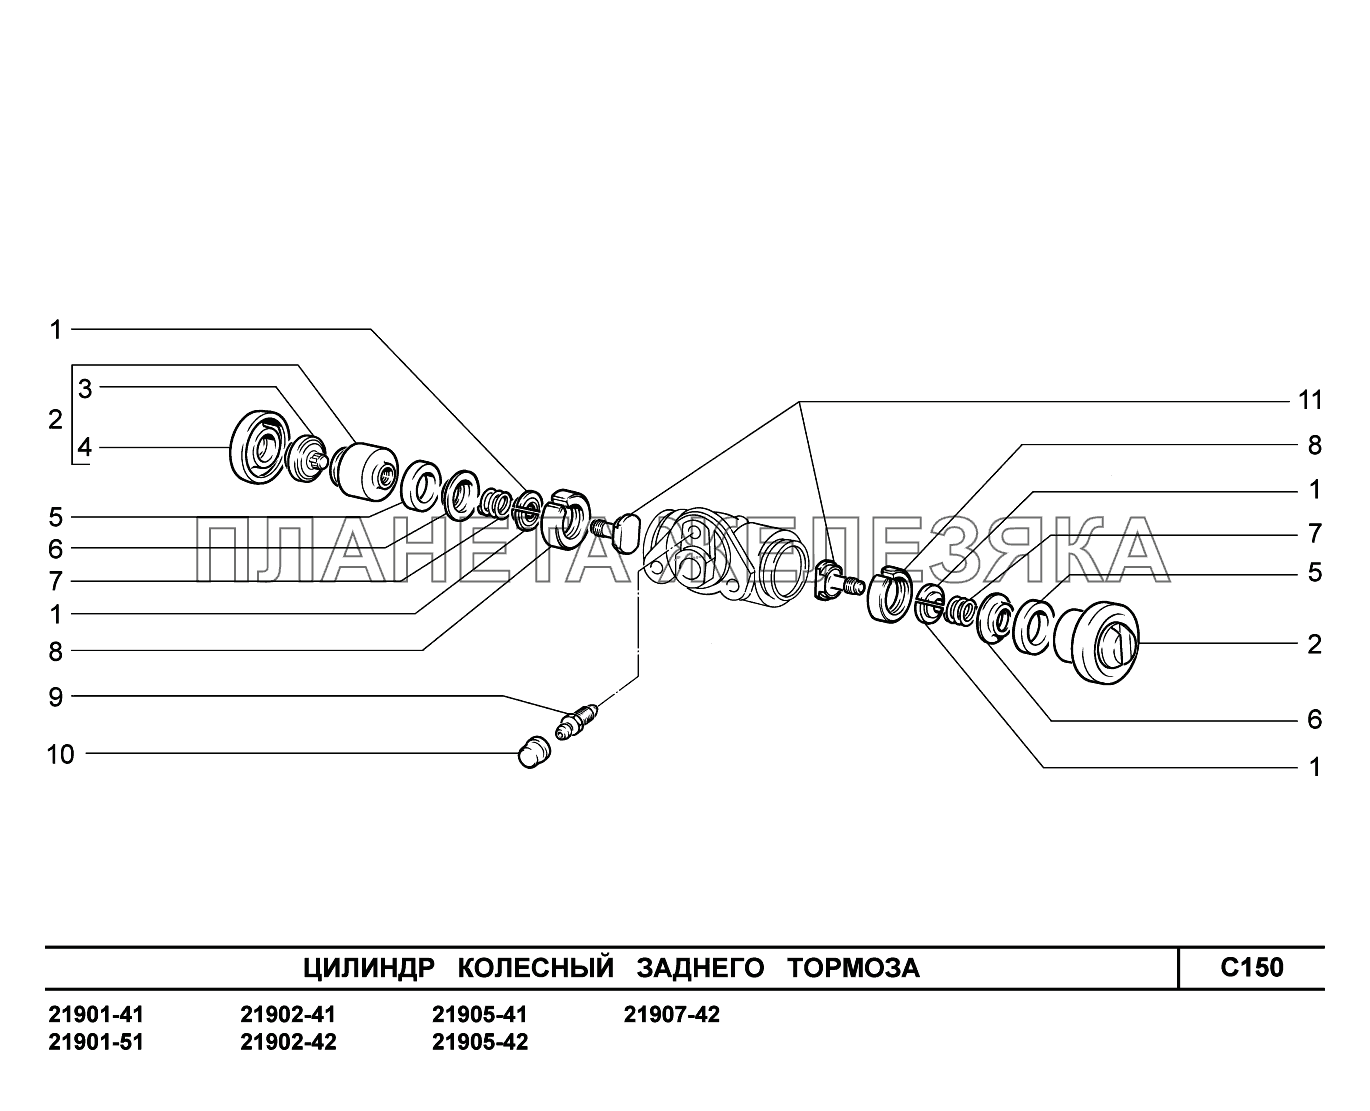 C150. Цилиндр колесный заднего тормоза Lada Granta-2190